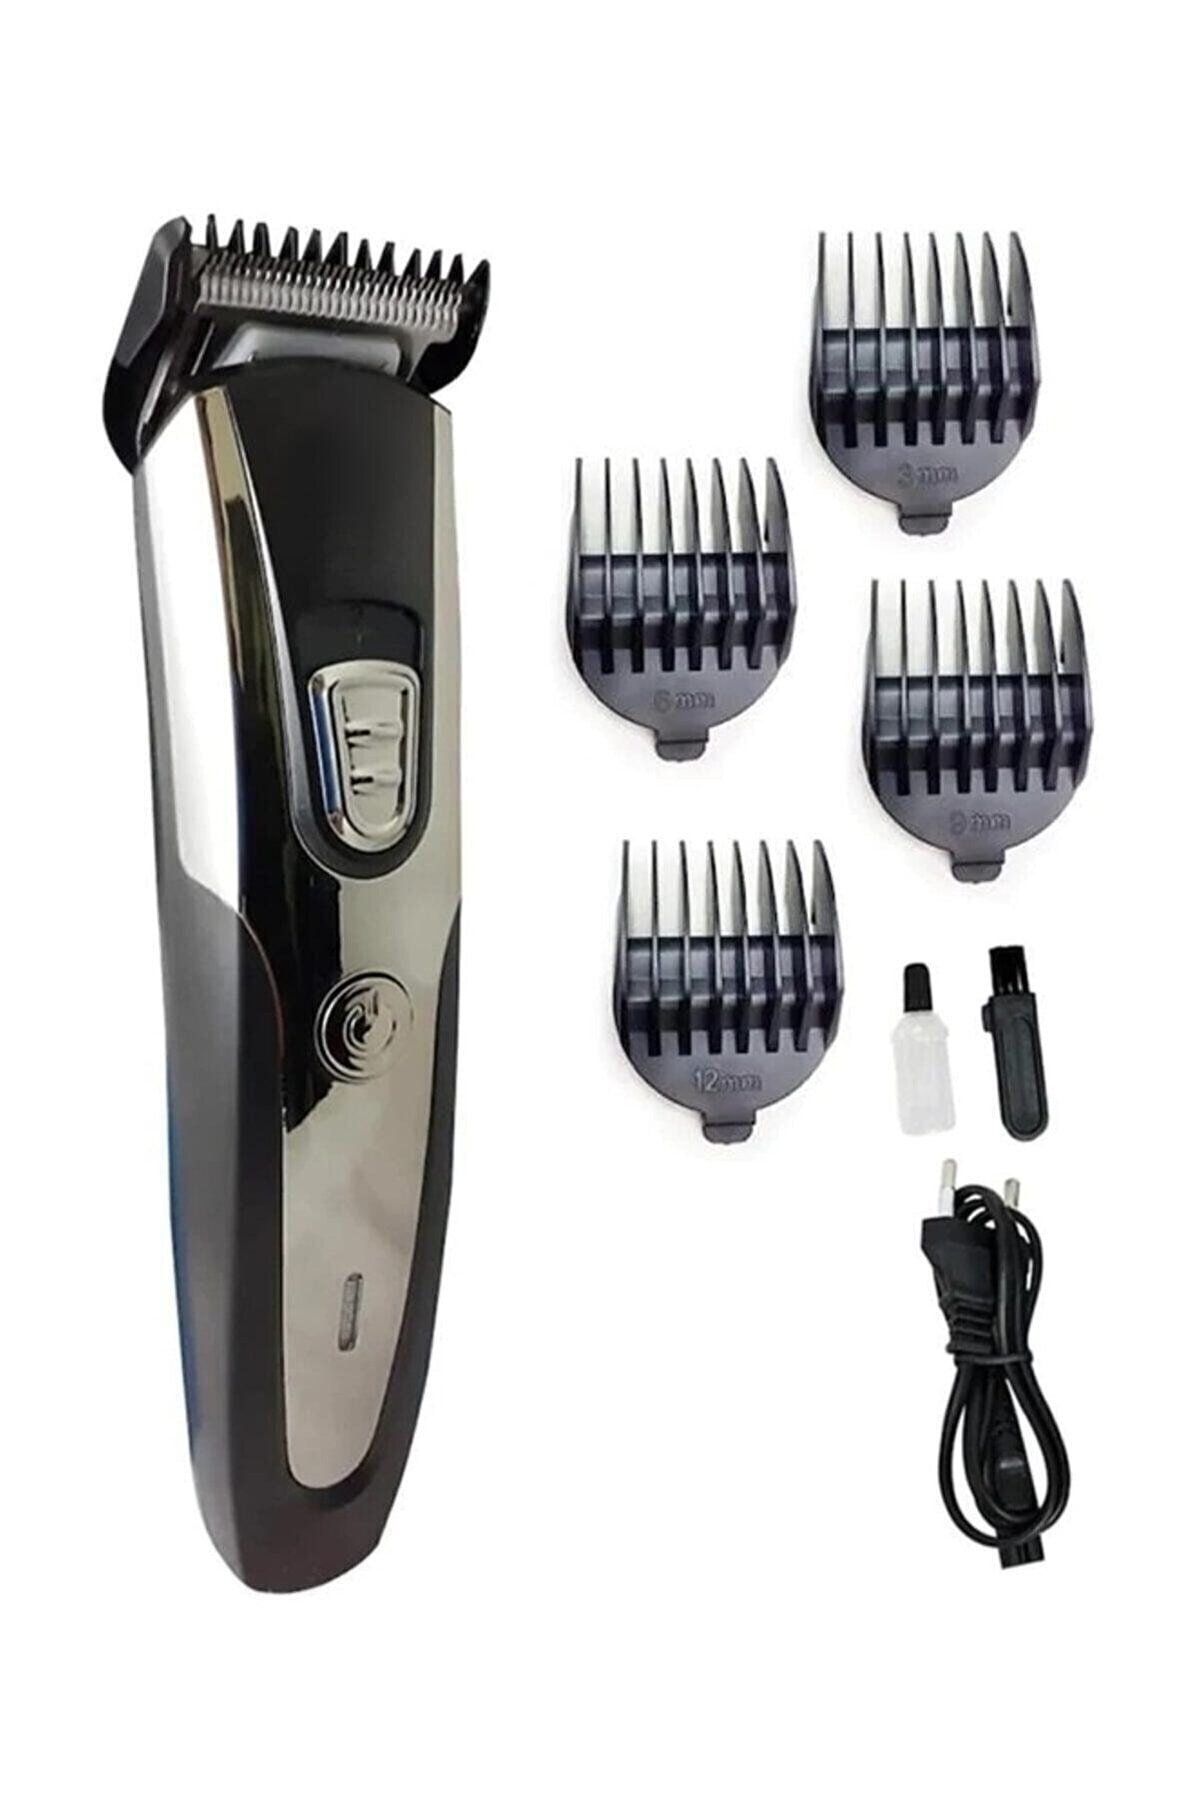 ARI STAR Ip-1019 Profesyonel Şarjlı Saç Sakal Ense Vücut Kılı Kesme Tıraş Makinesi Lazer Öncesi